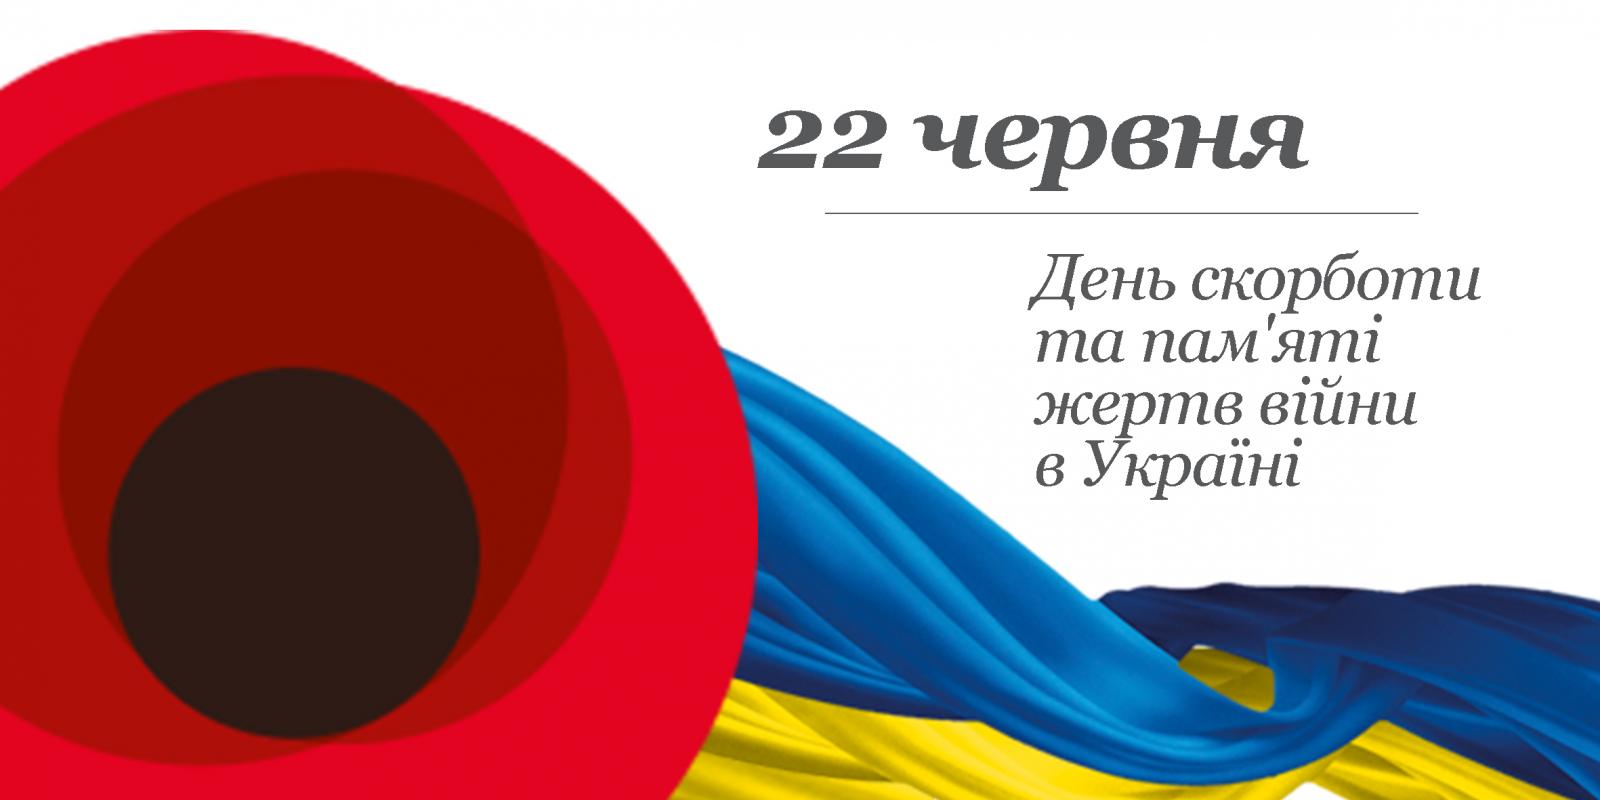 День скорботи та пам'яті жертв війни в Україні